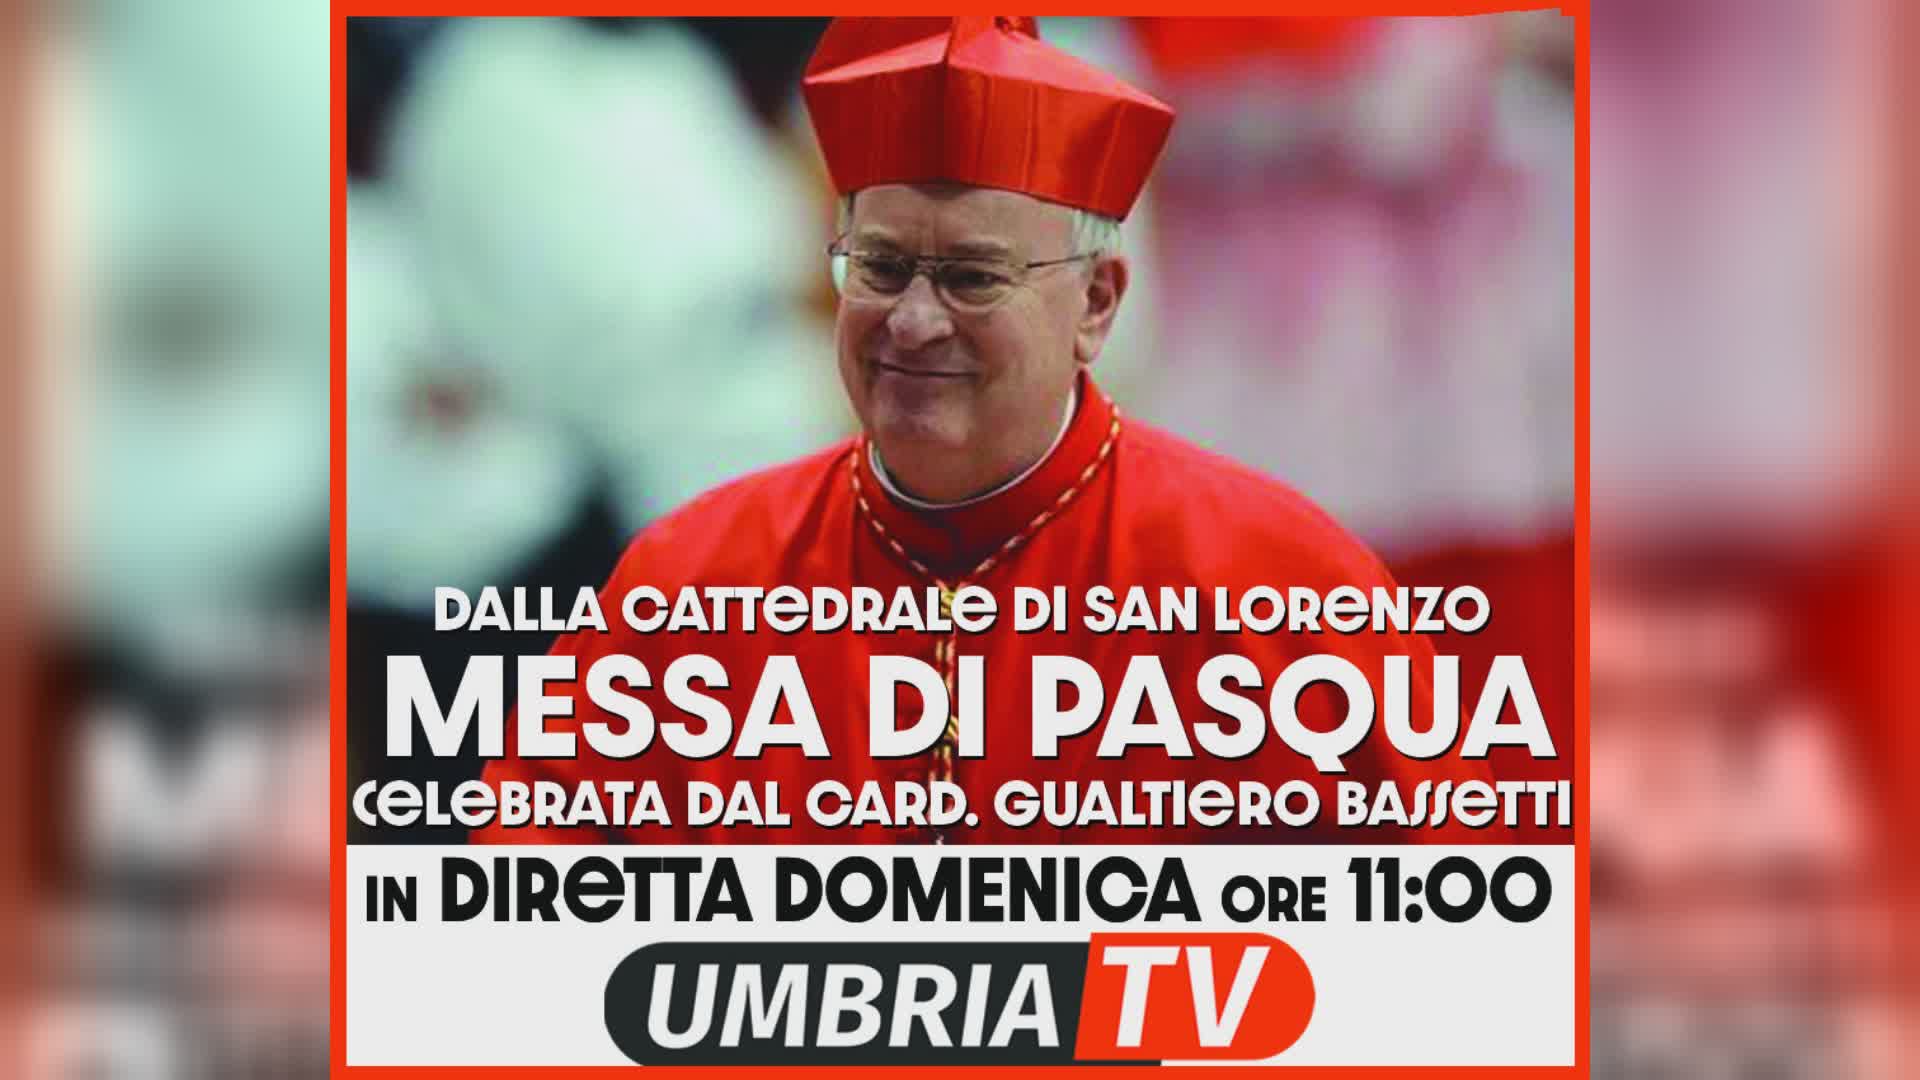 Domenica Pasqua, santa messa delle 11 in diretta su Umbria Tv